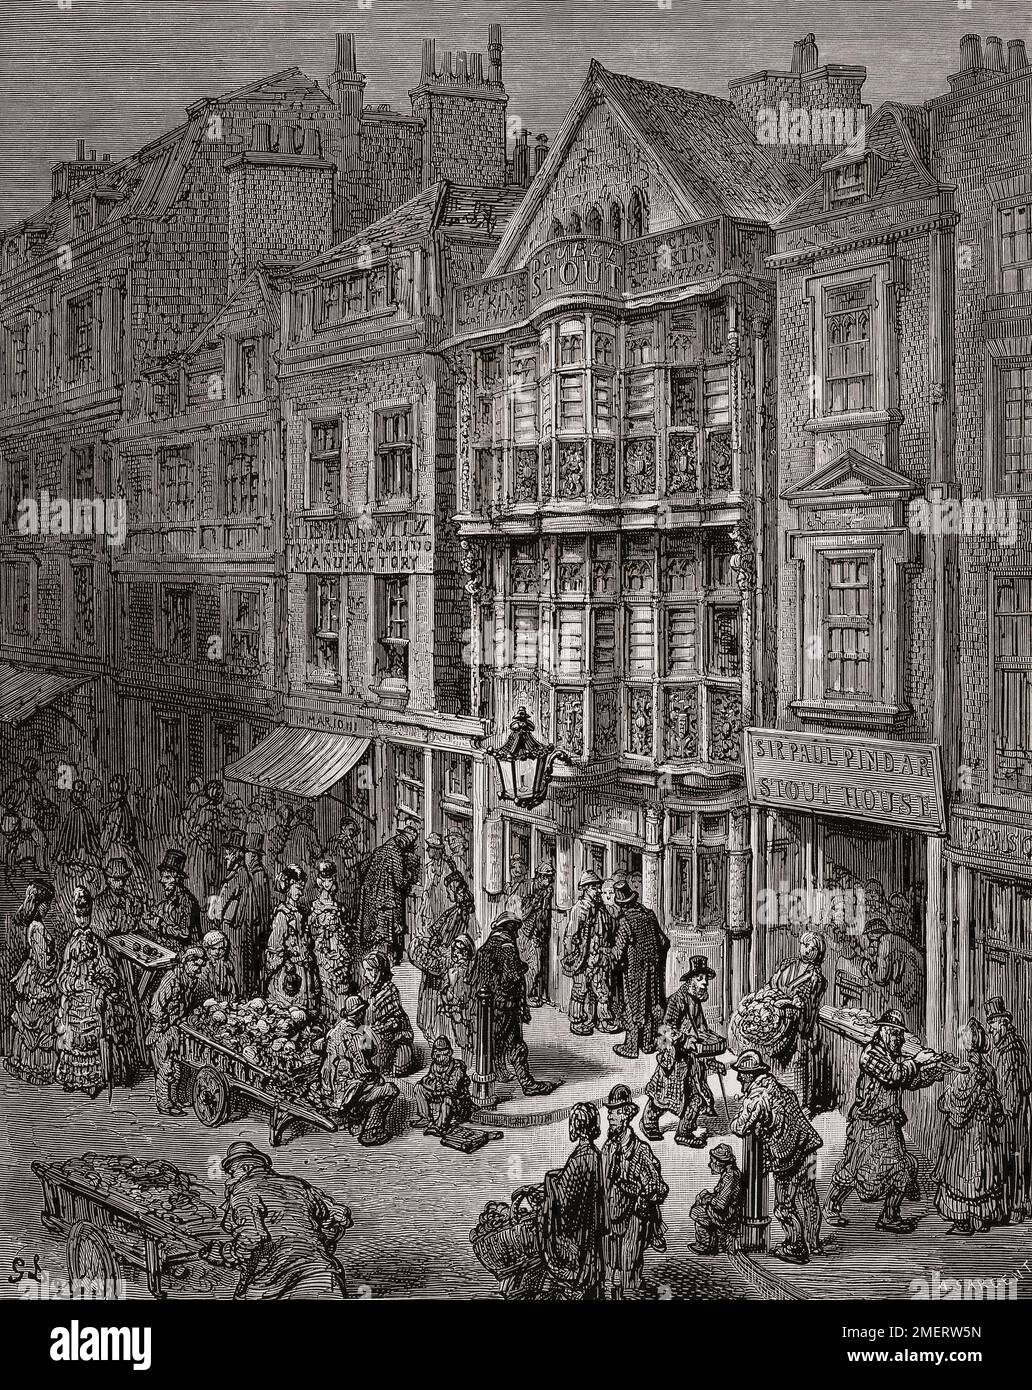 Bishopsgate Street nel 19th ° secolo a Londra. Dopo un'illustrazione di Gustave Doré nell'edizione americana di Londra del 1890: Un pellegrinaggio scritto da Blanchard Jerrold e illustrato da Gustave Doré. Foto Stock